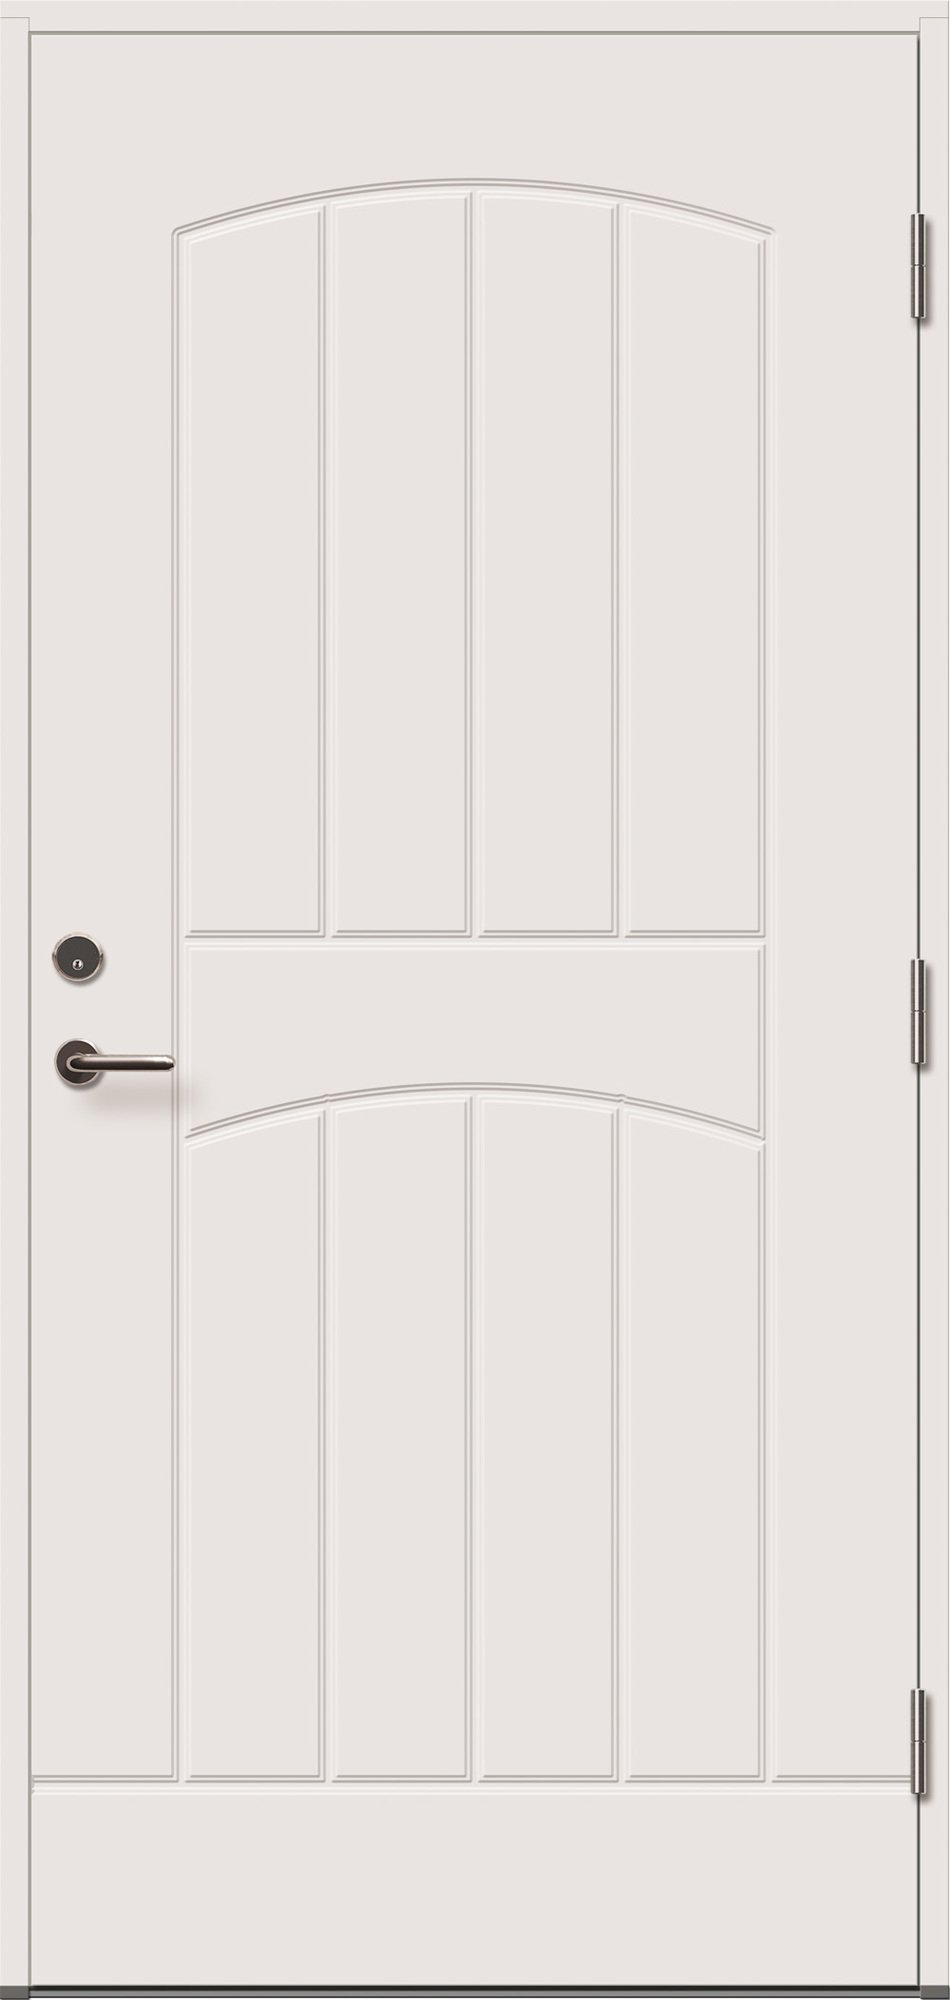 Lauko durys VILJANDI GRACIA, baltos sp., 890 x 2088 mm, kairė